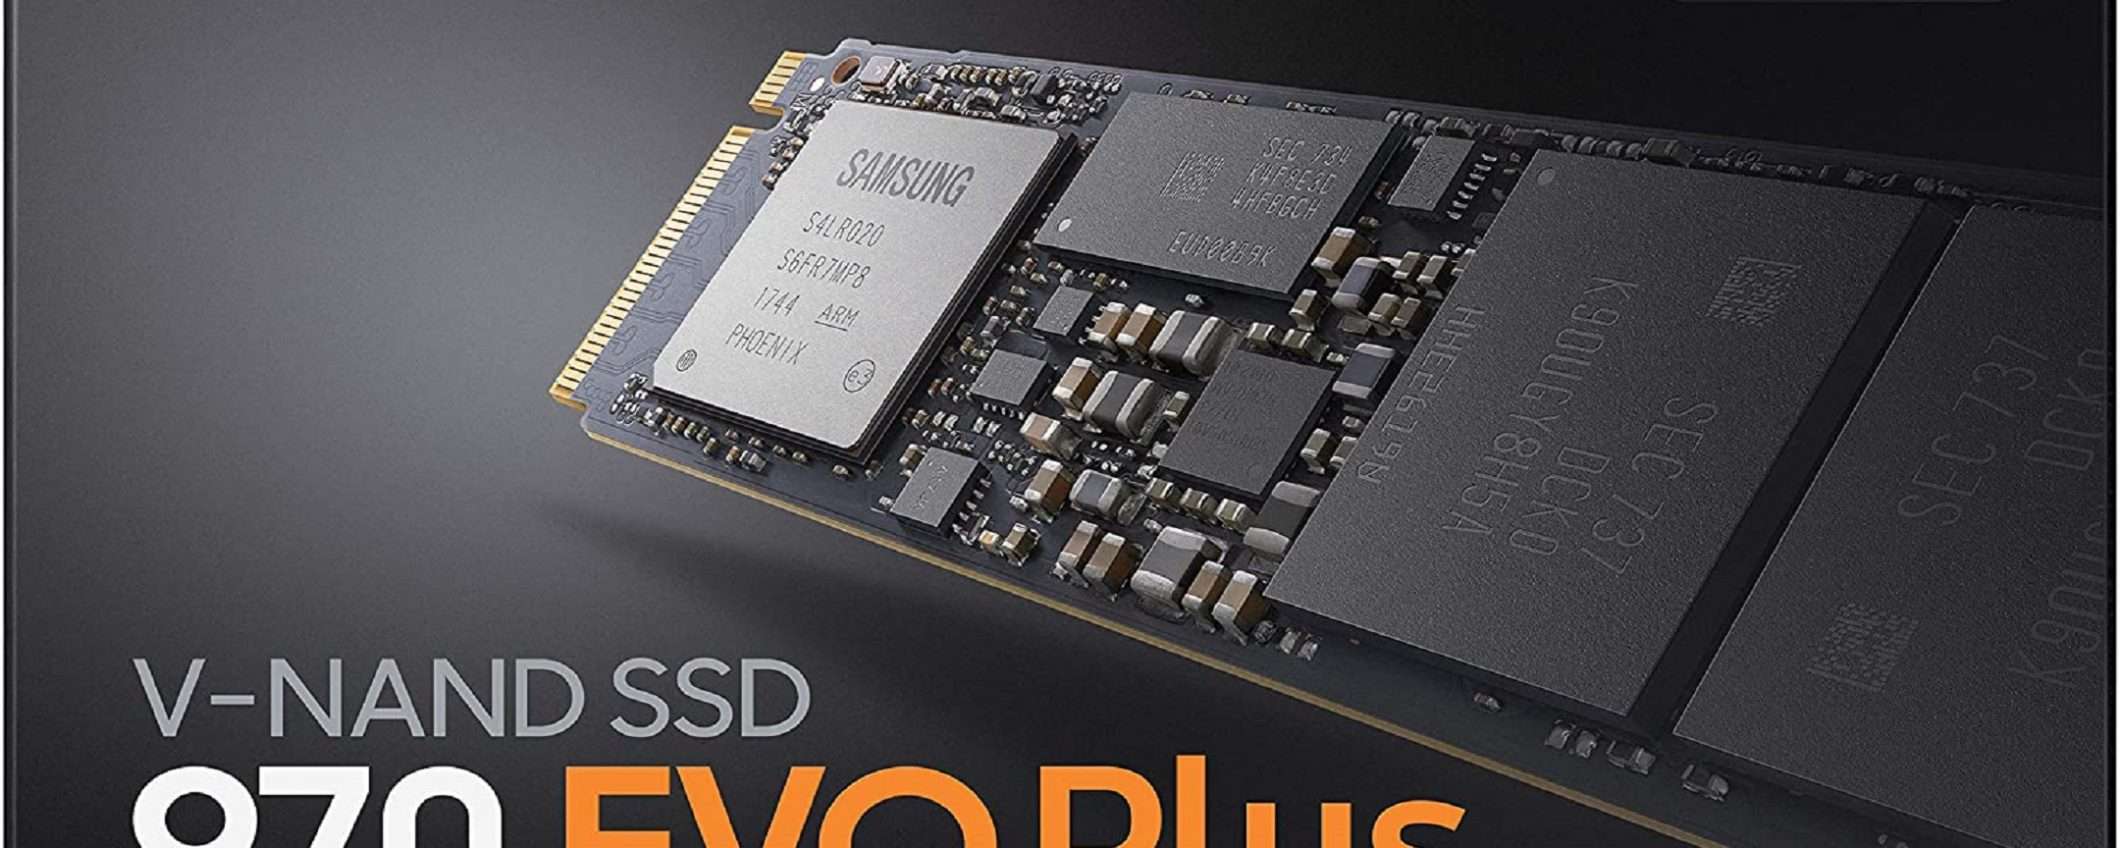 SSD interno Samsung 970 EVO Plus da 250GB: prezzo WOW!